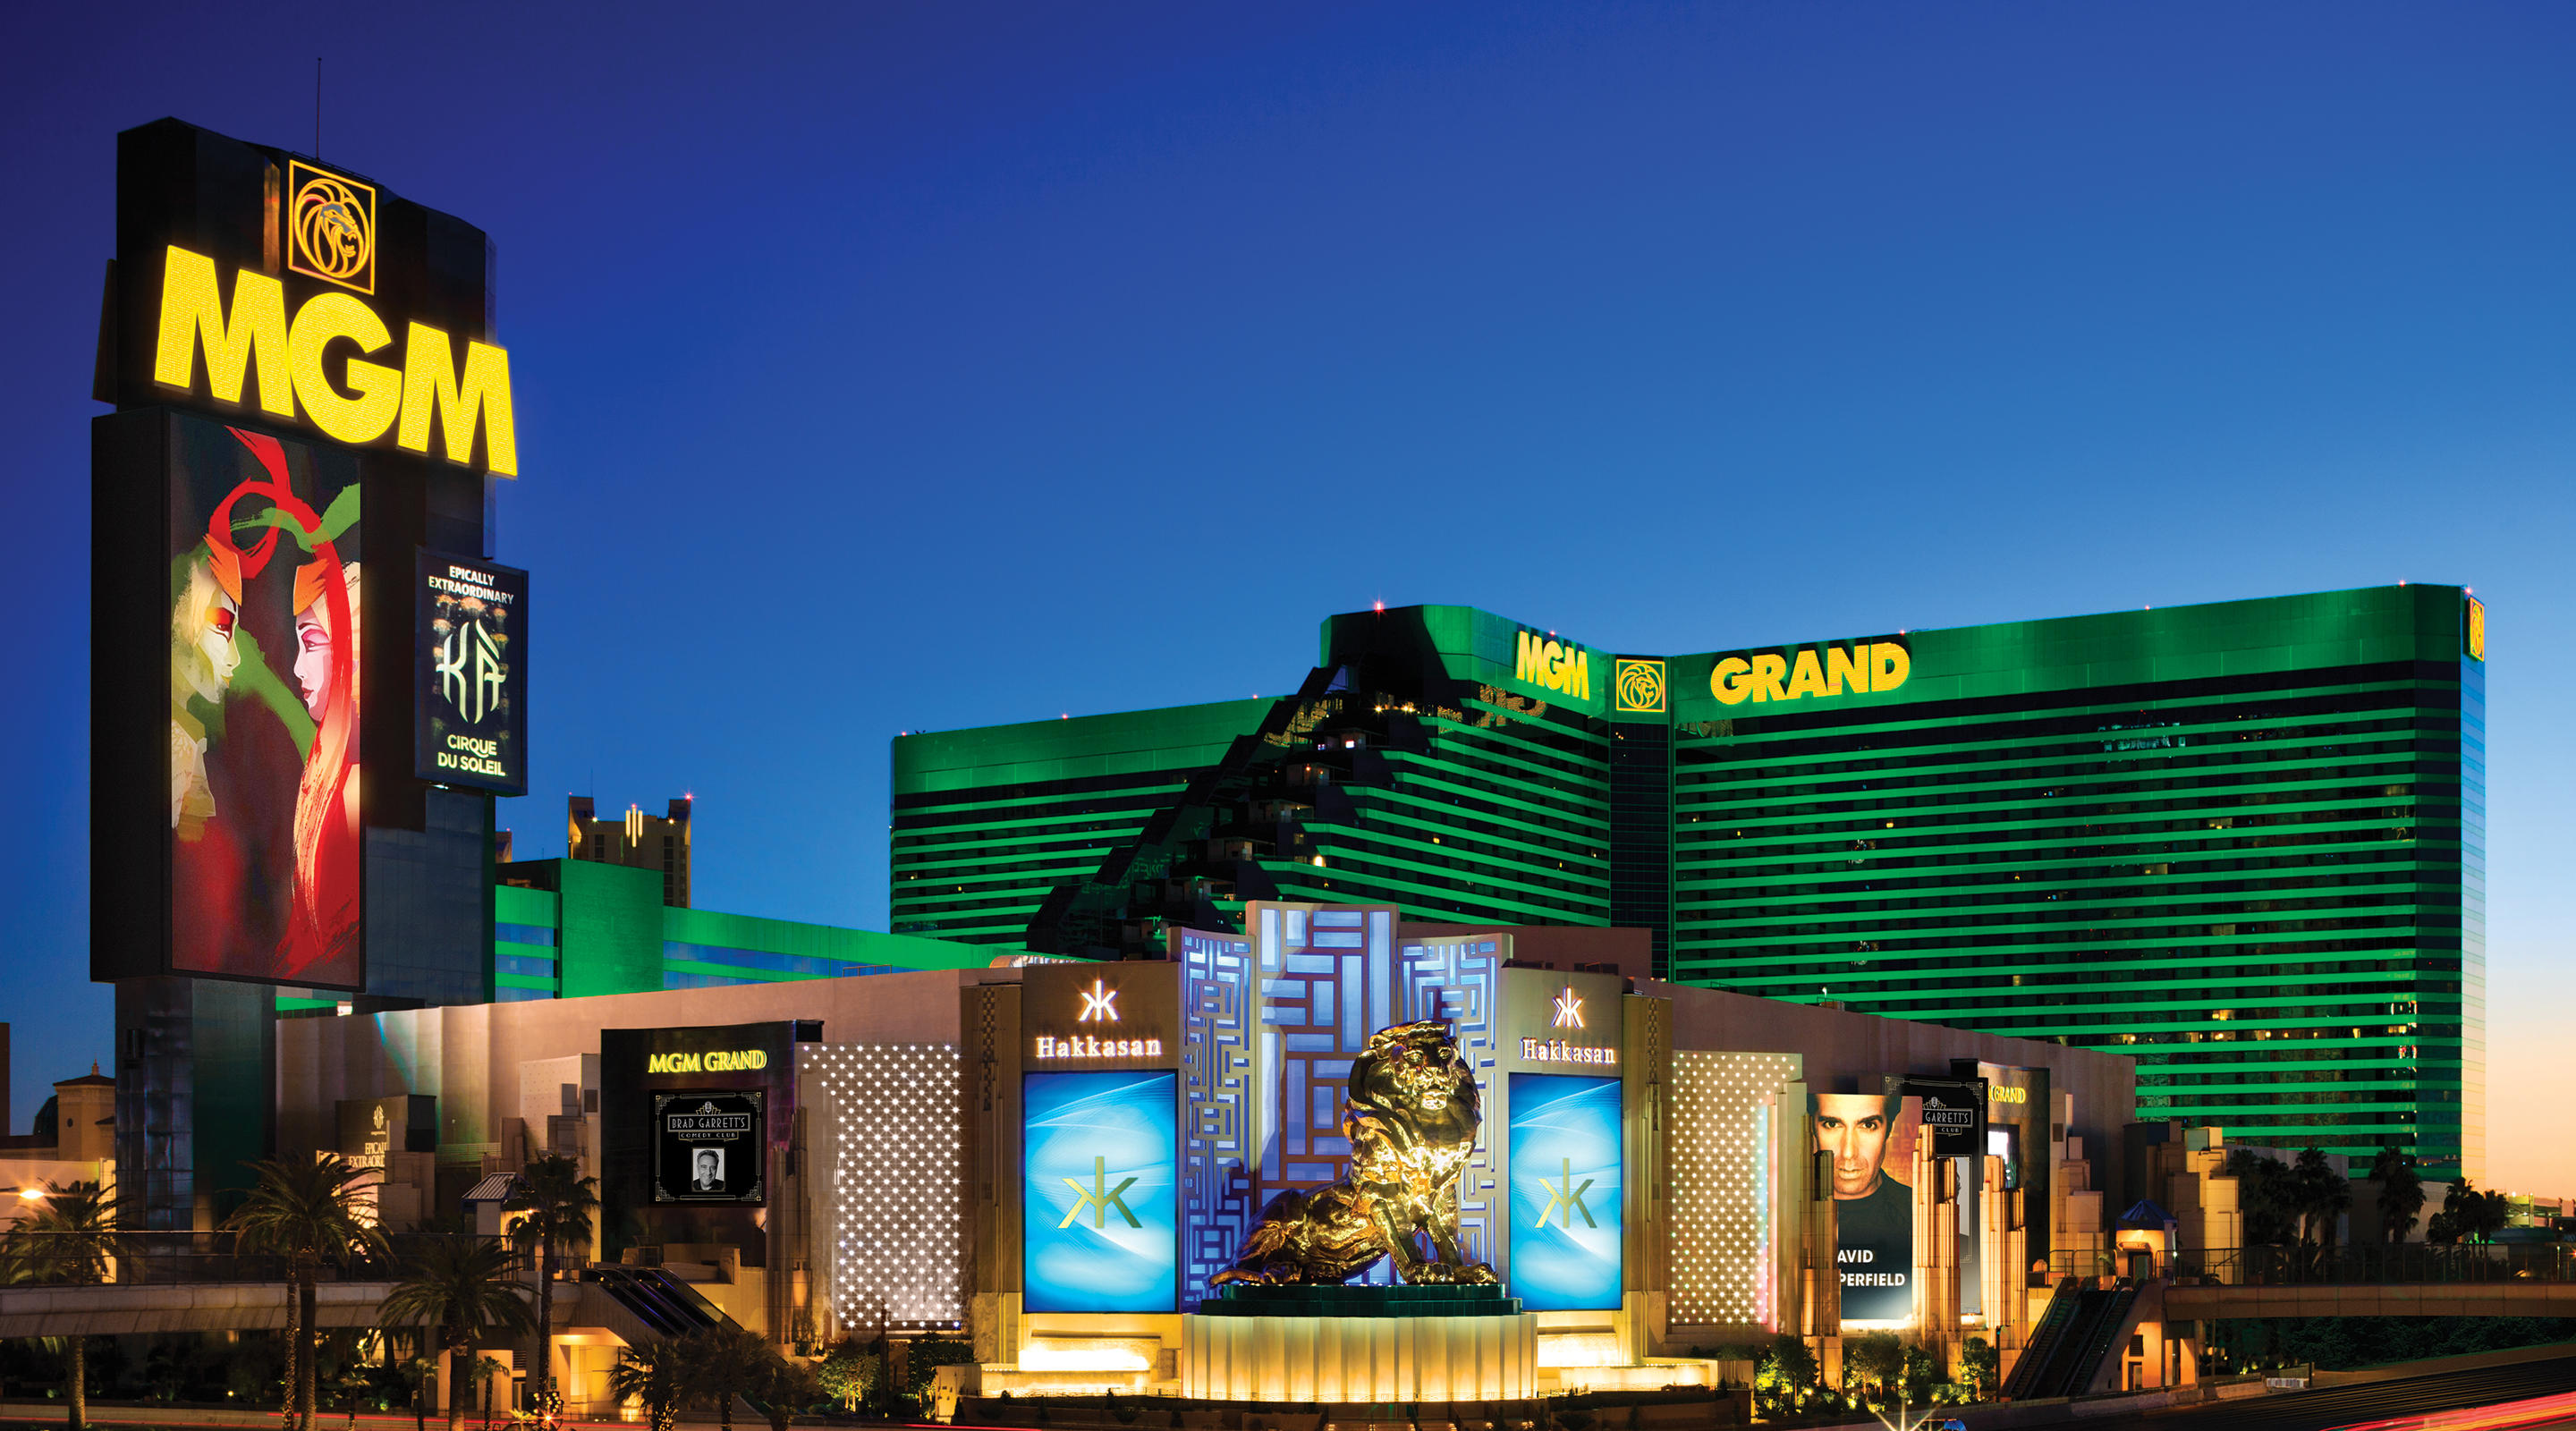 mgm grand hotel and casino 7 cassinos que impressionam no design e arquitetura